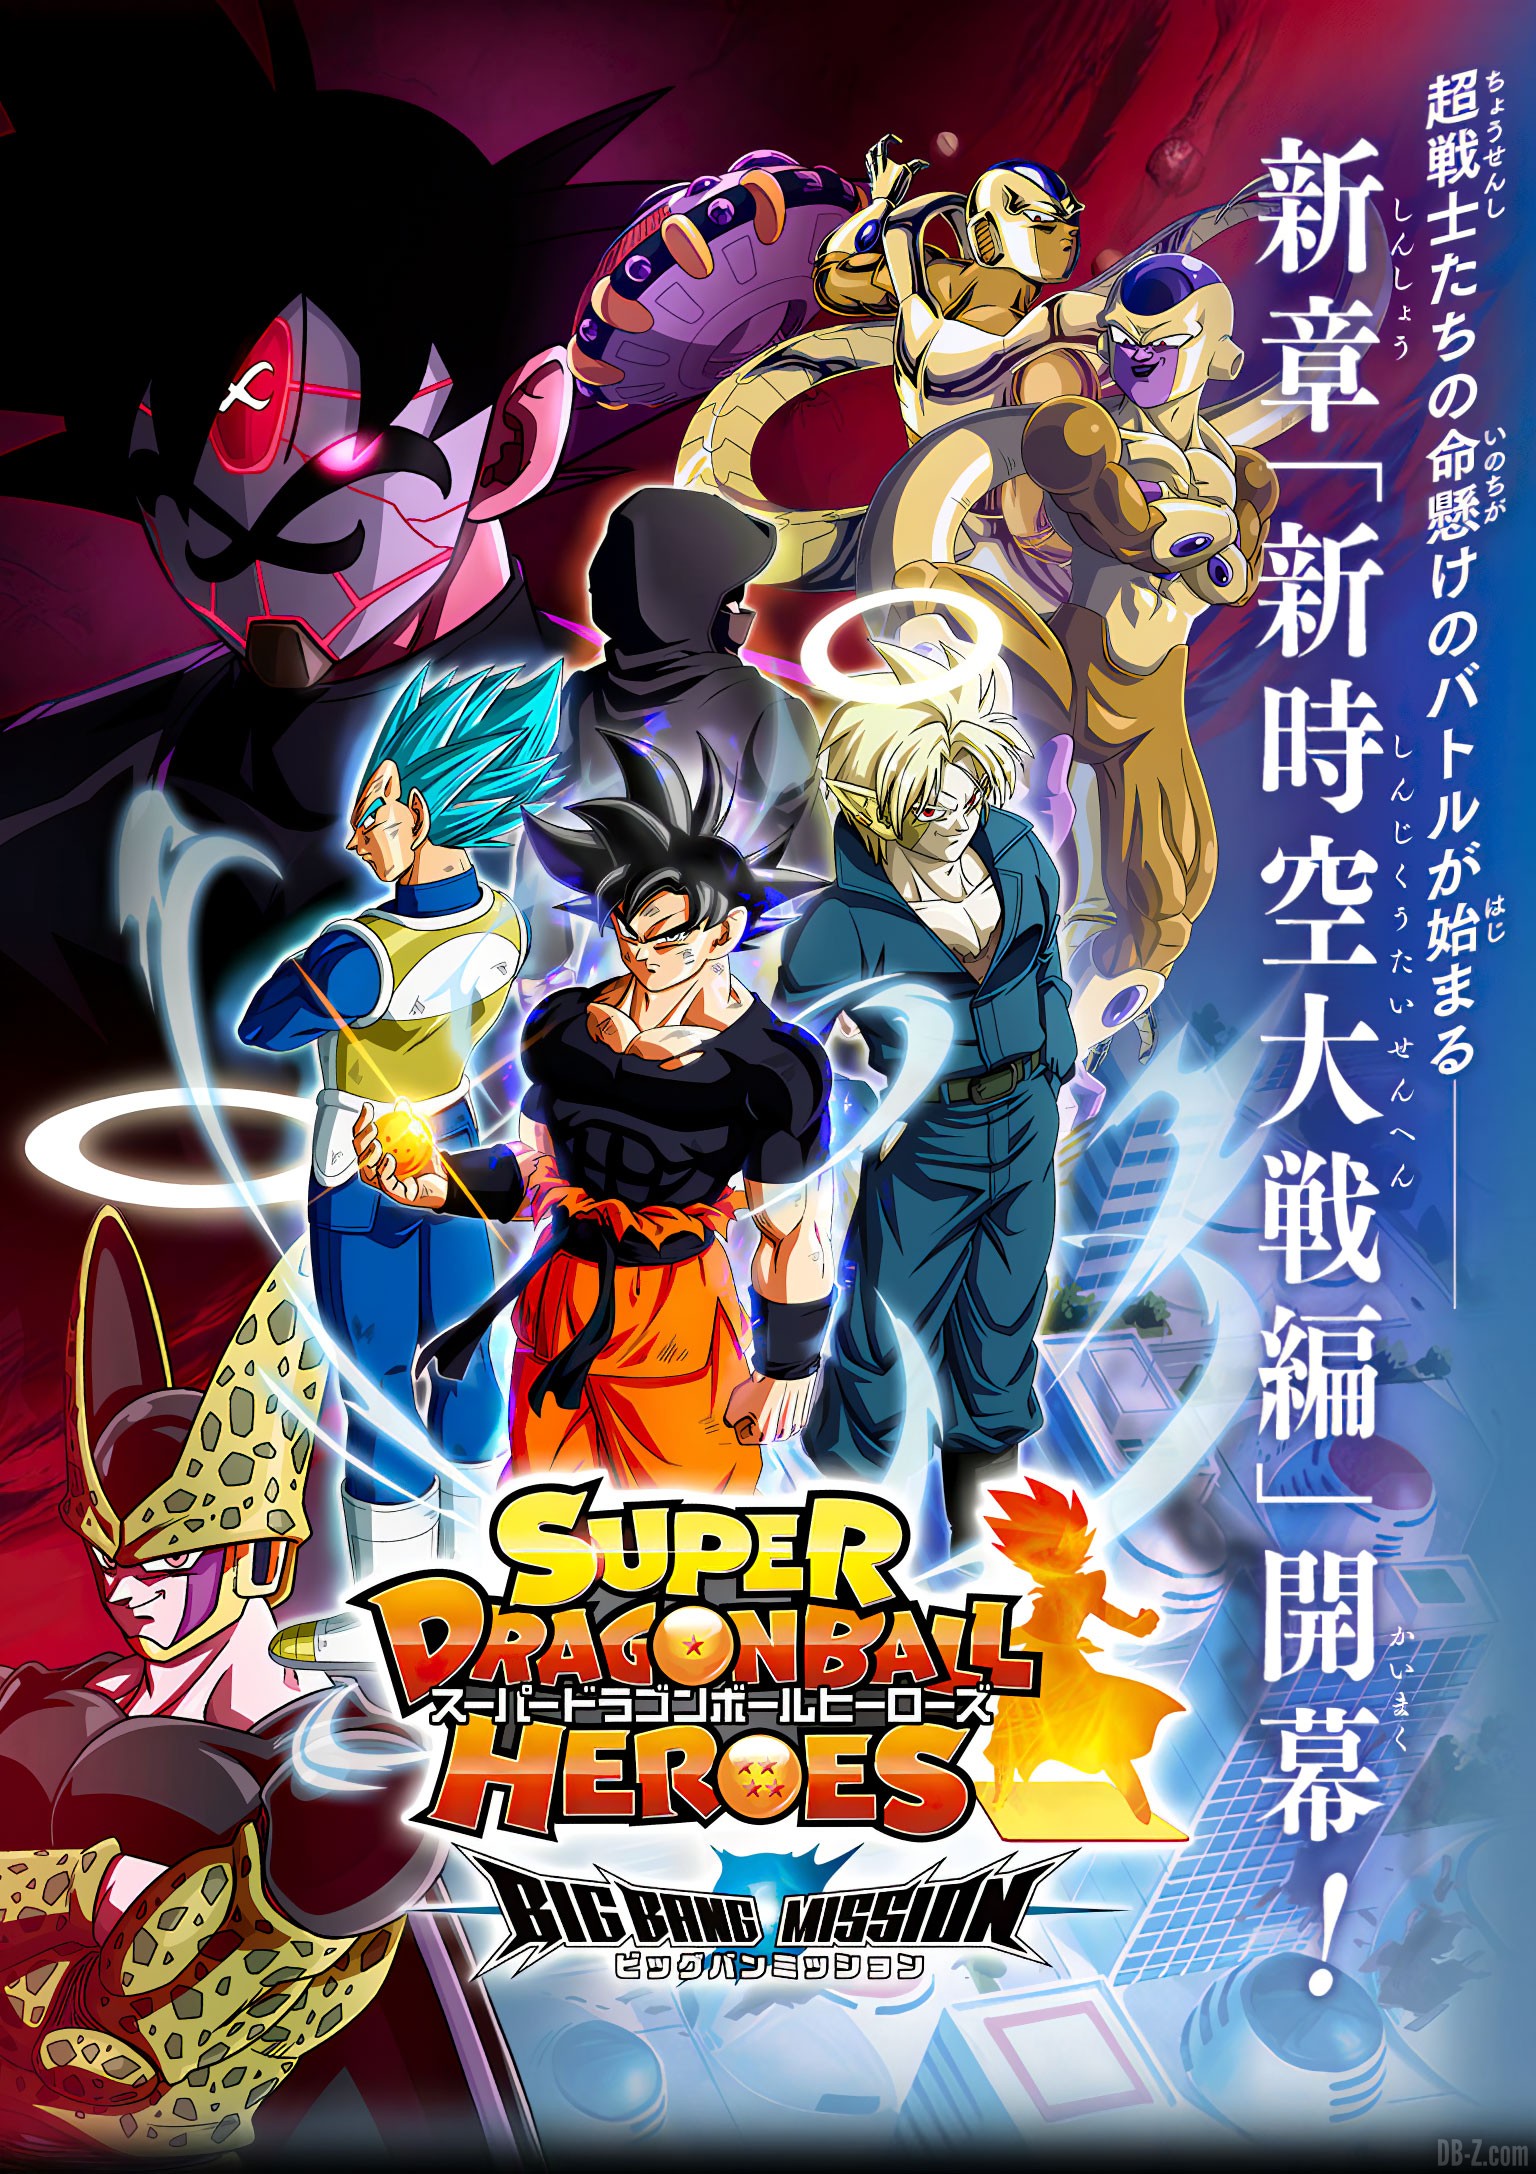 Cell, bientôt de retour dans la série animée Super Dragon Ball Heroes